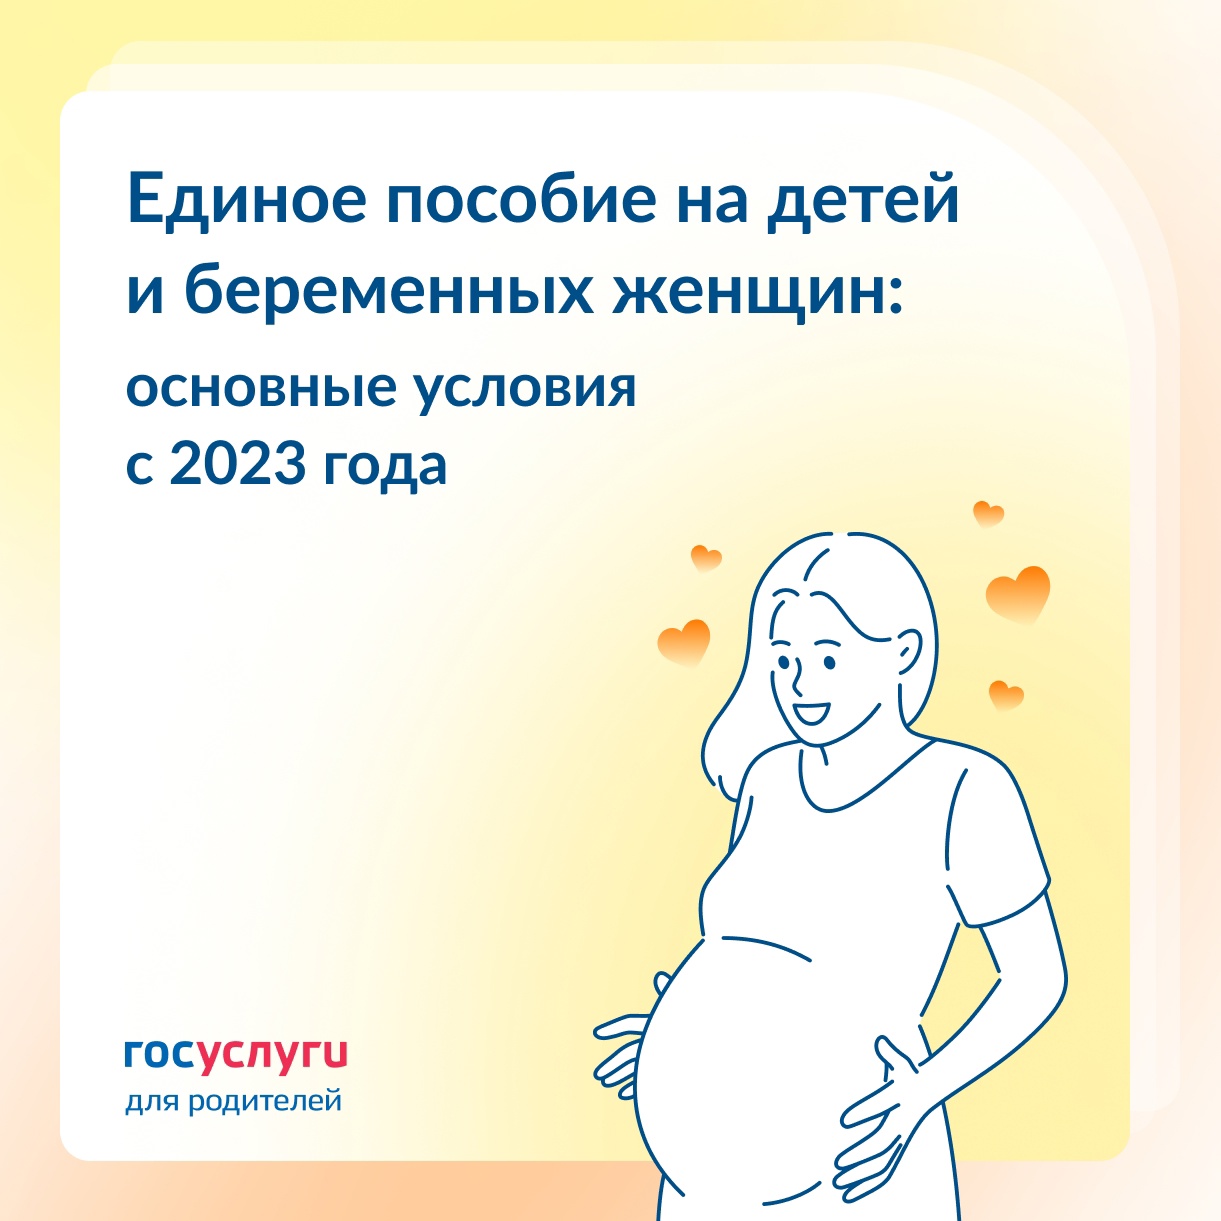 Социальный фонд России начнет предоставлять единое пособие на детей и беременным женщинам с 2023 года